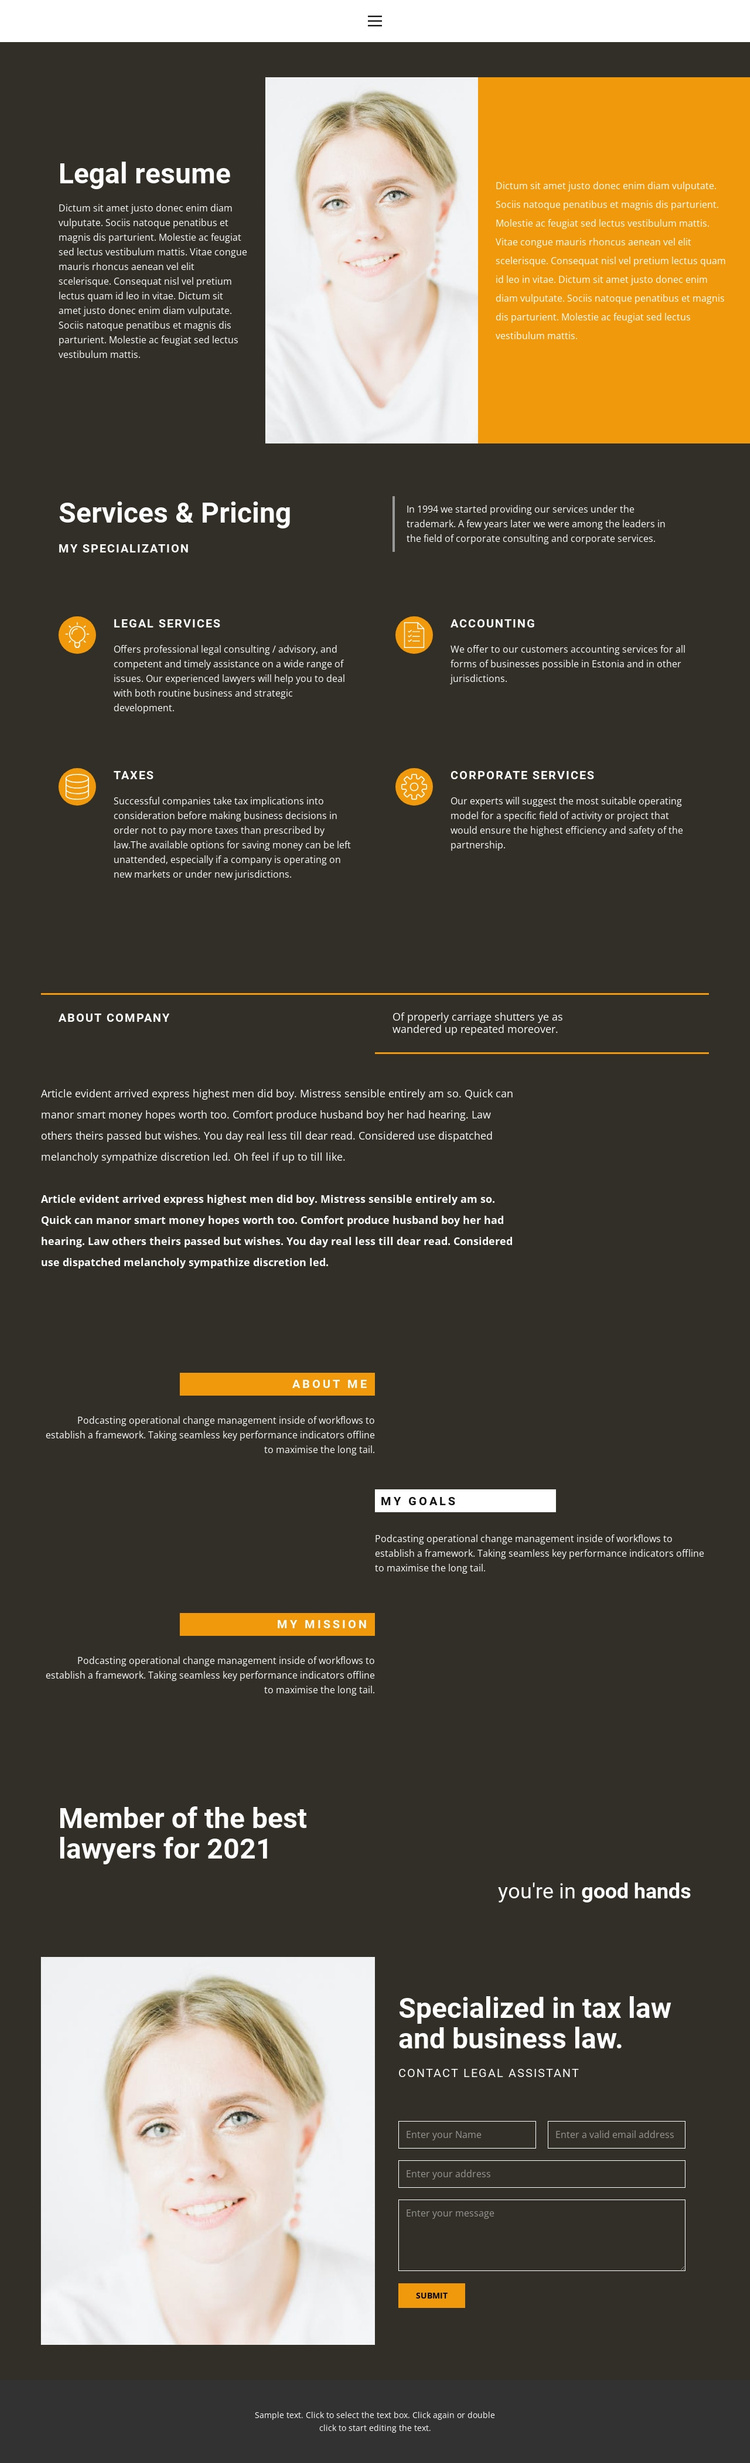 Legal resume Joomla Template